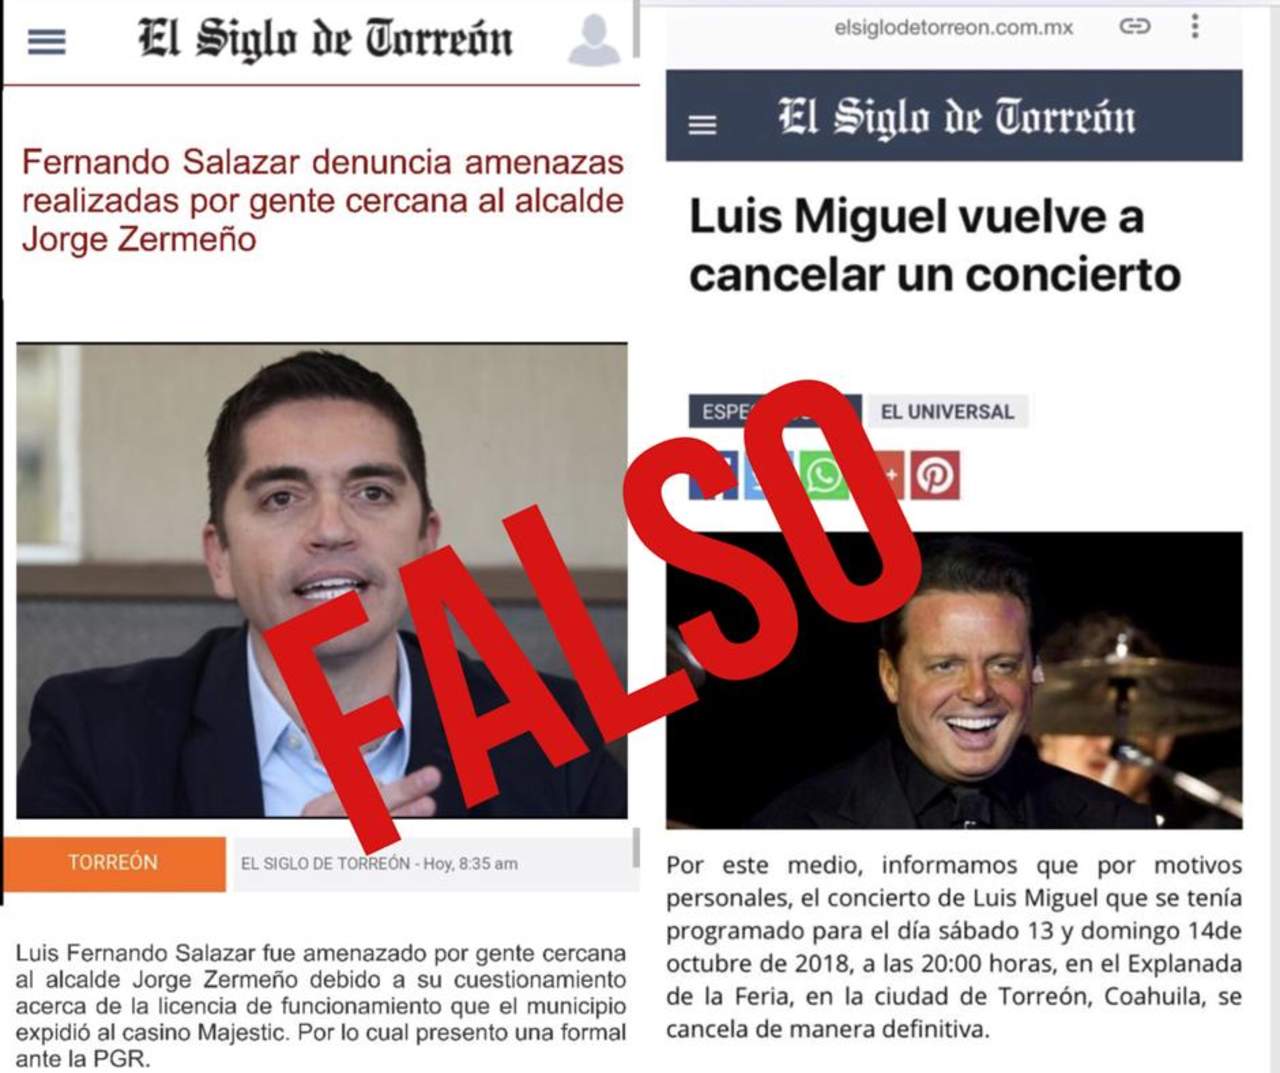 Ante tales publicaciones, El Siglo de Torreón se deslinda de dicha información que circula a través de redes sociales. (EL SIGLO DE TORREÓN)